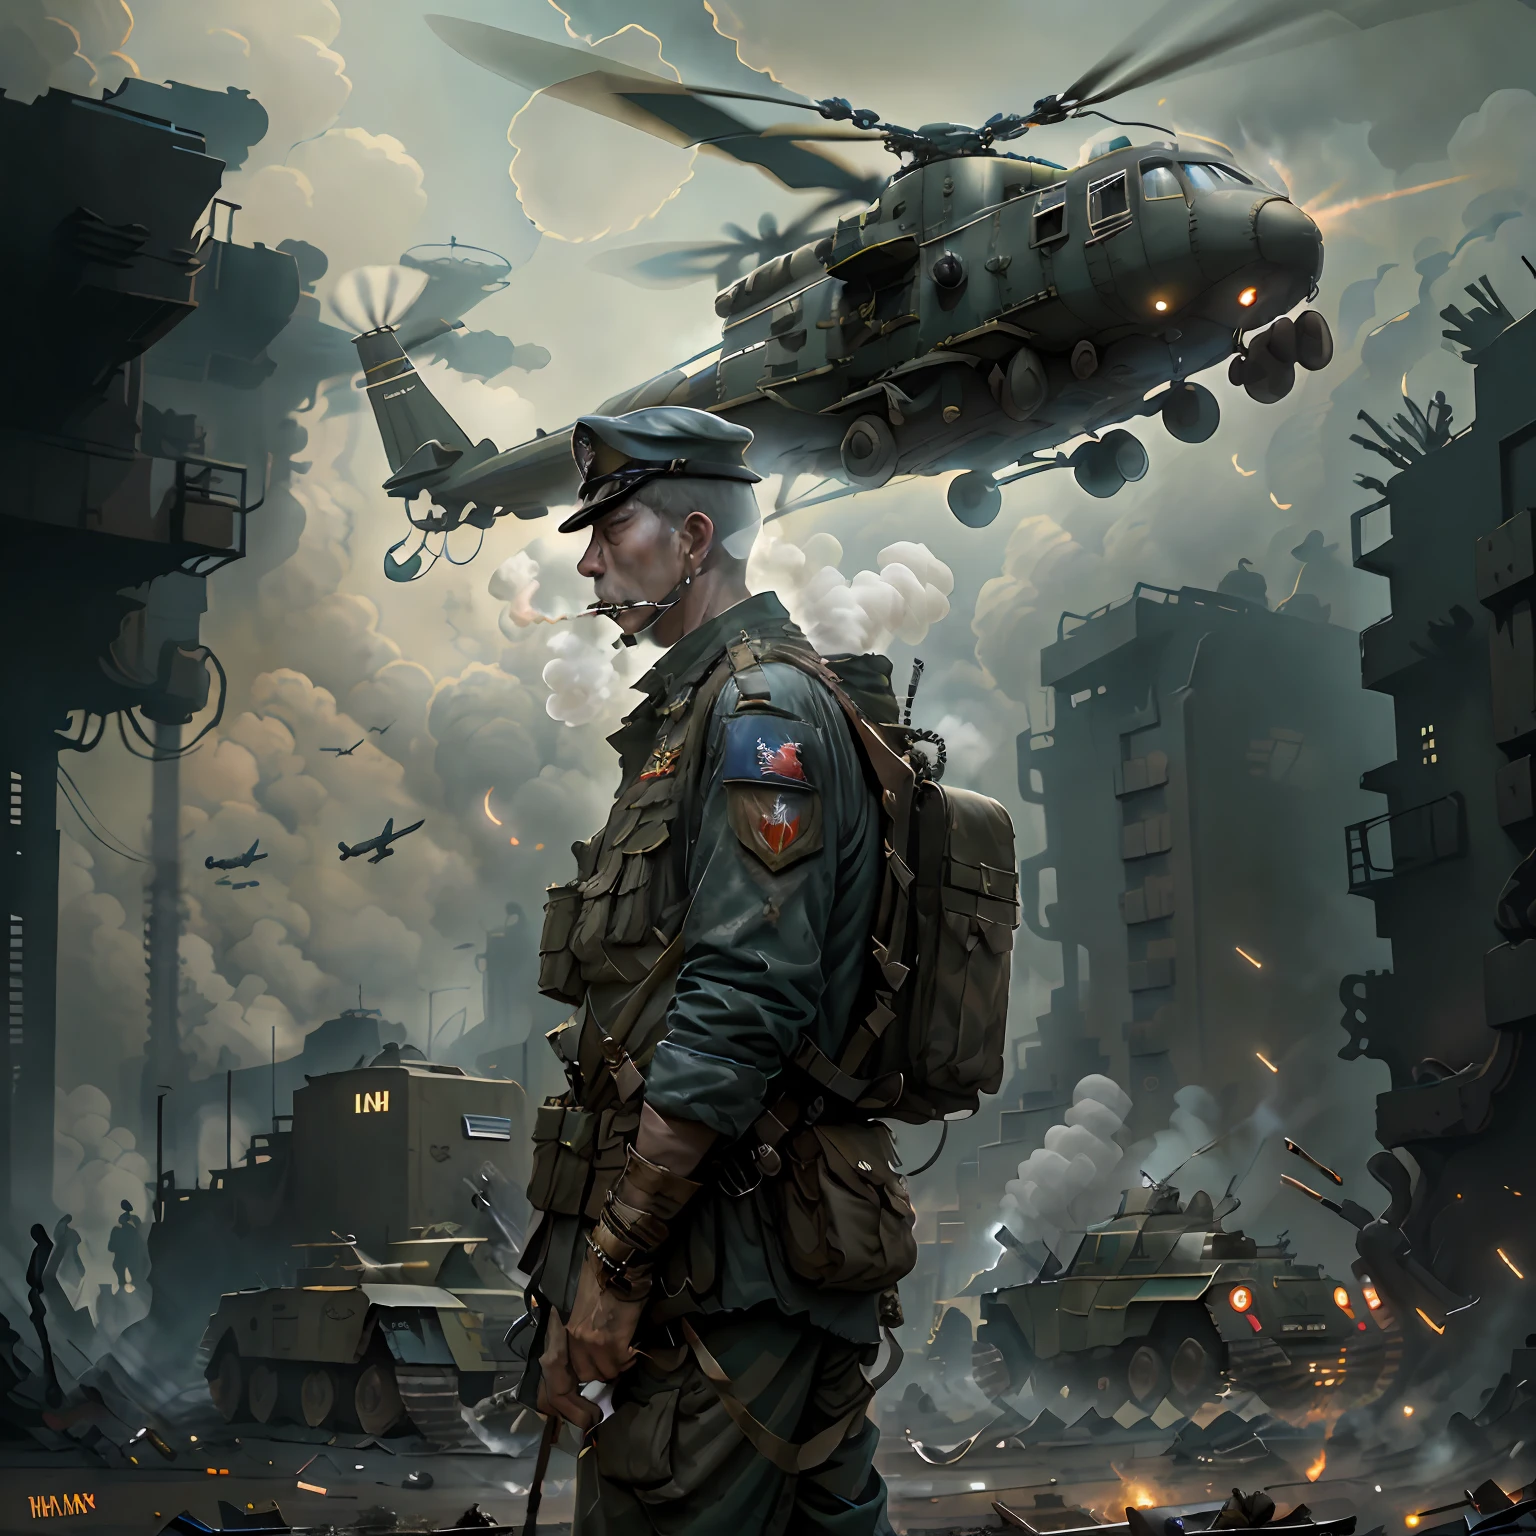 "旧暗影狂奔风格, 越南战争期间，一名士兵在吸烟, 背景是阴郁的城市氛围和一架飞过的军用直升机."